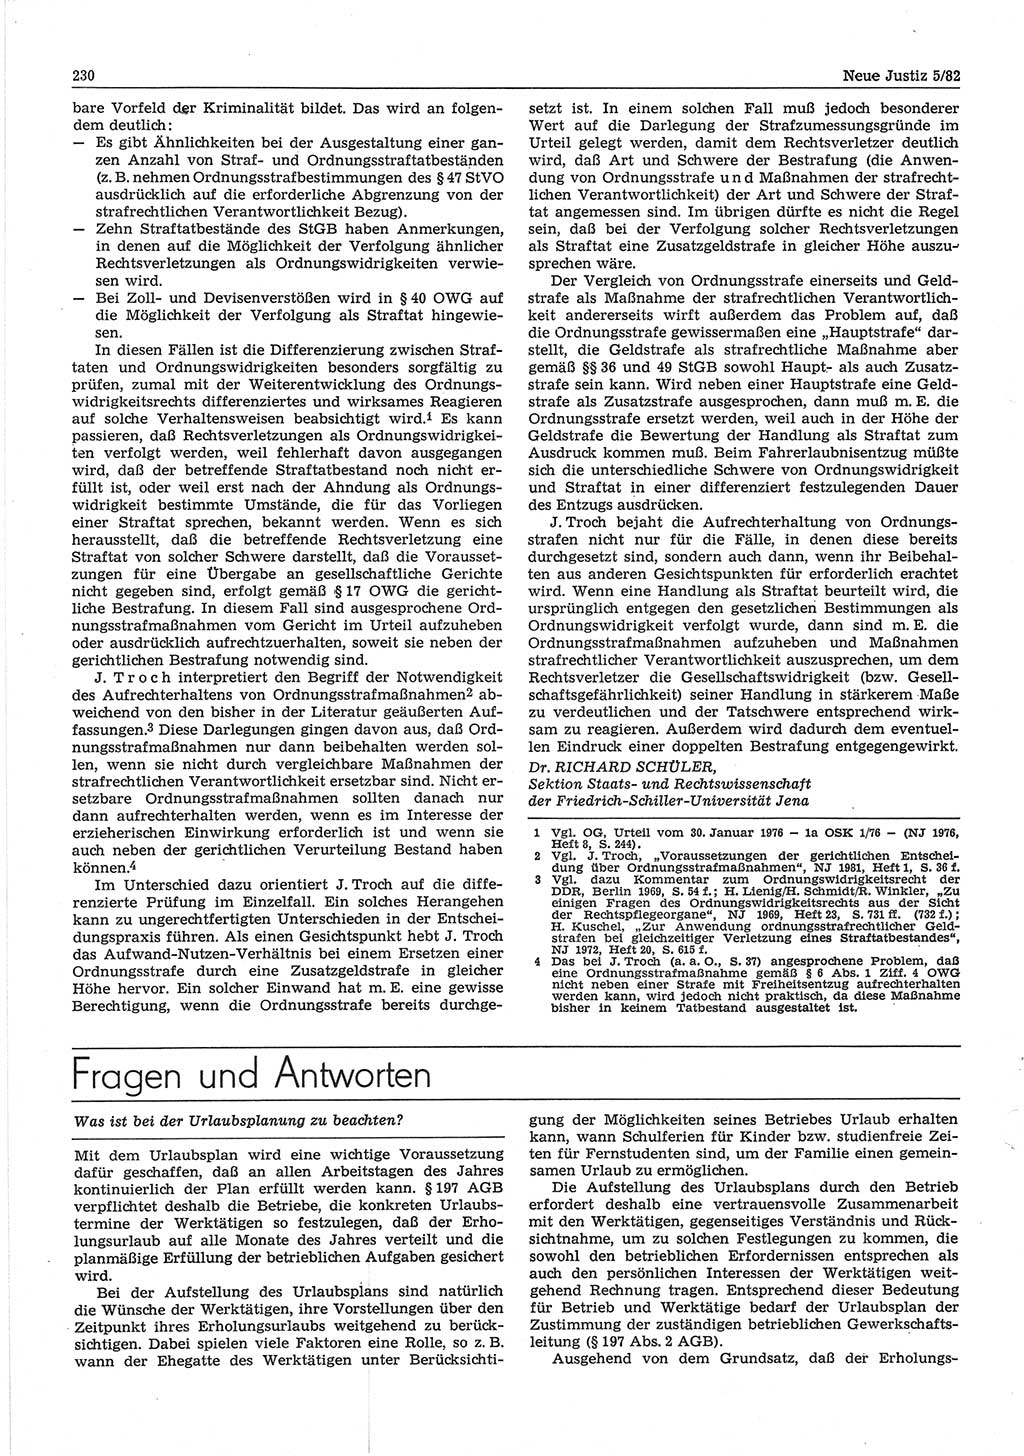 Neue Justiz (NJ), Zeitschrift für sozialistisches Recht und Gesetzlichkeit [Deutsche Demokratische Republik (DDR)], 36. Jahrgang 1982, Seite 230 (NJ DDR 1982, S. 230)